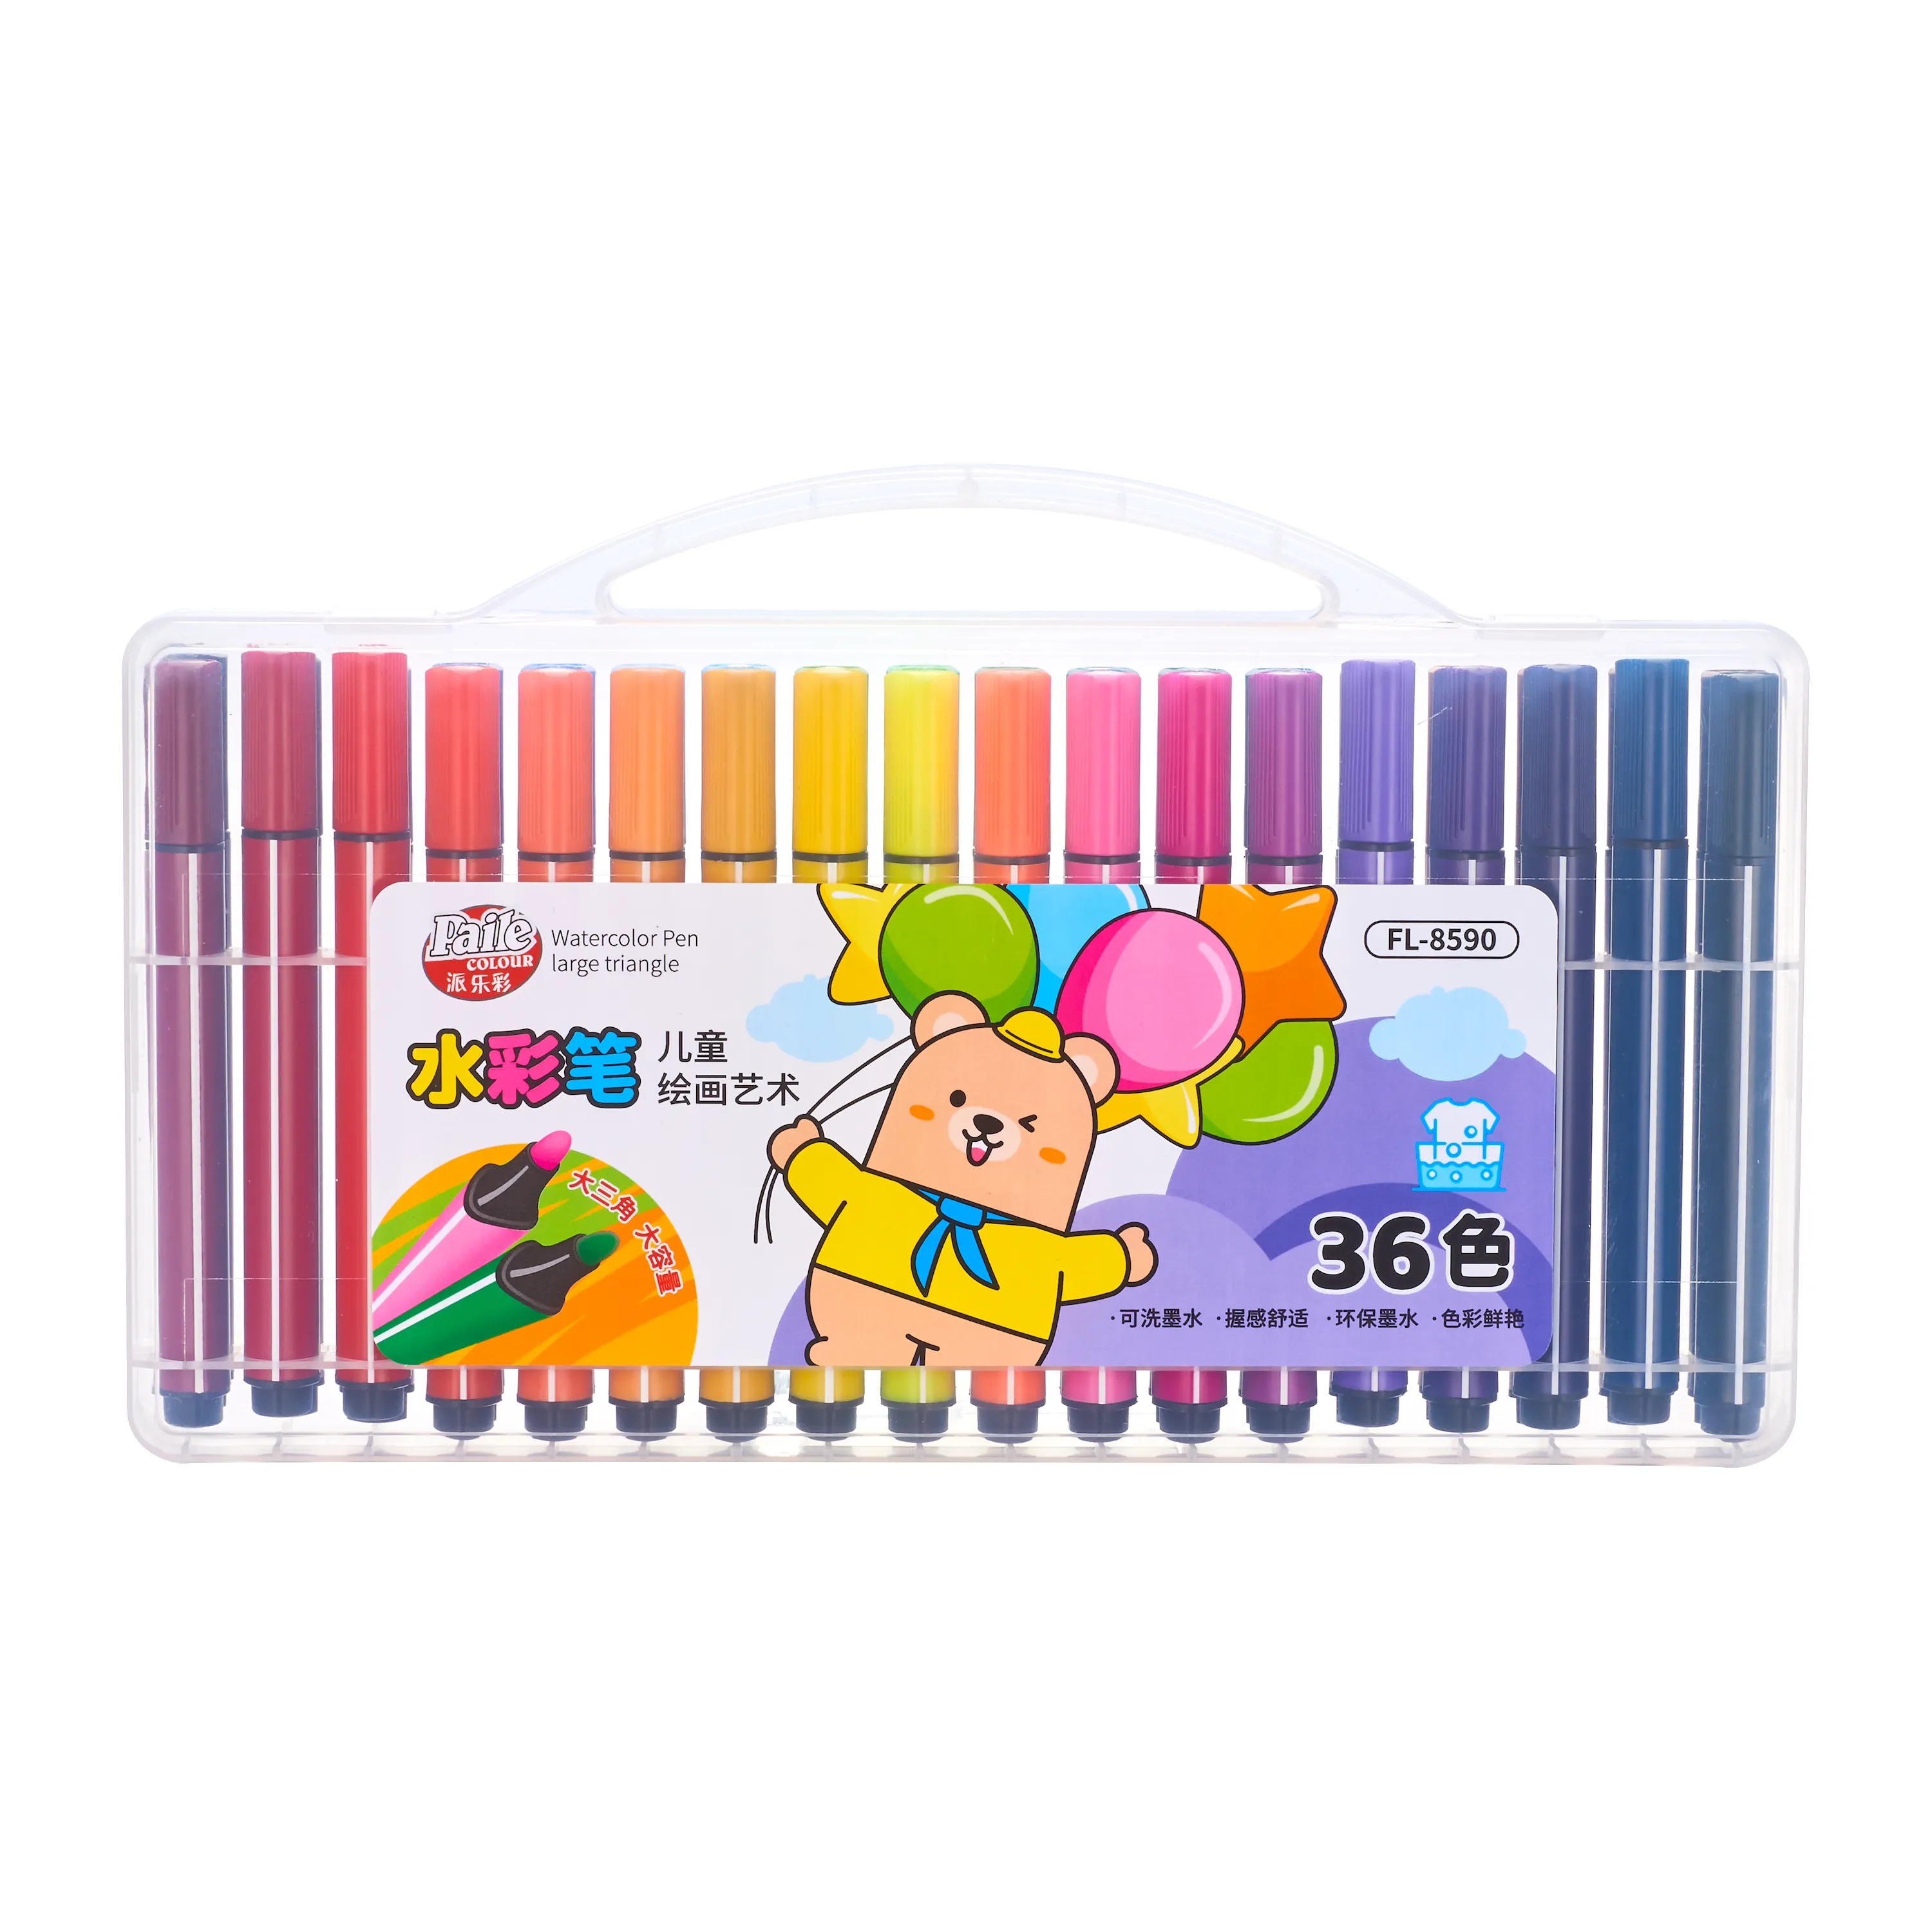 Conjunto de canetas aquarela lavável com ponta fina, 12 cores, material PP com caixa durável, marcadores de arte com ponta de feltro